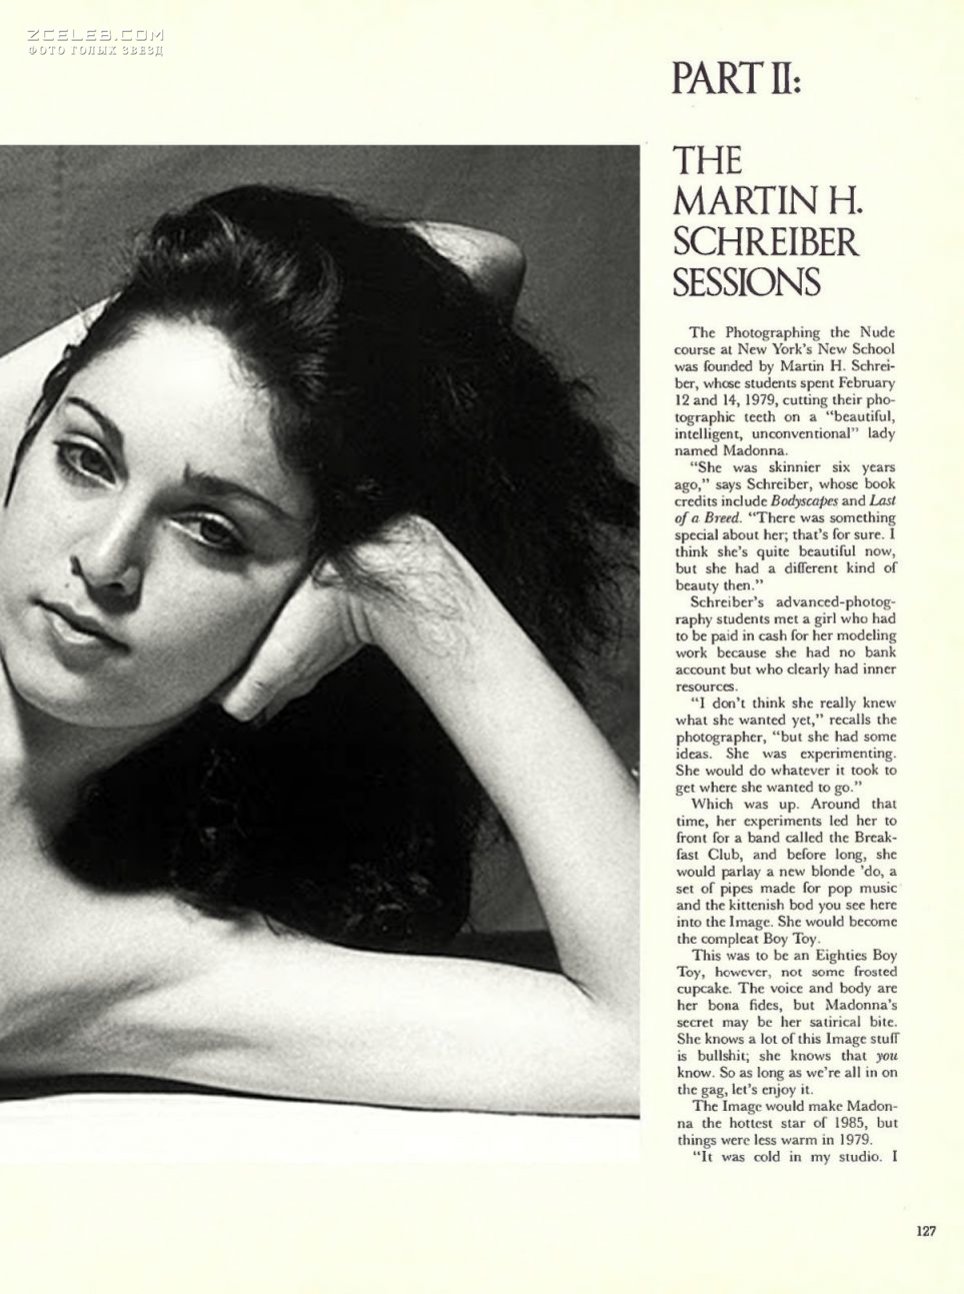 Оюнаженная Мадонна в журнале Playboy, Сентябрь 1985.